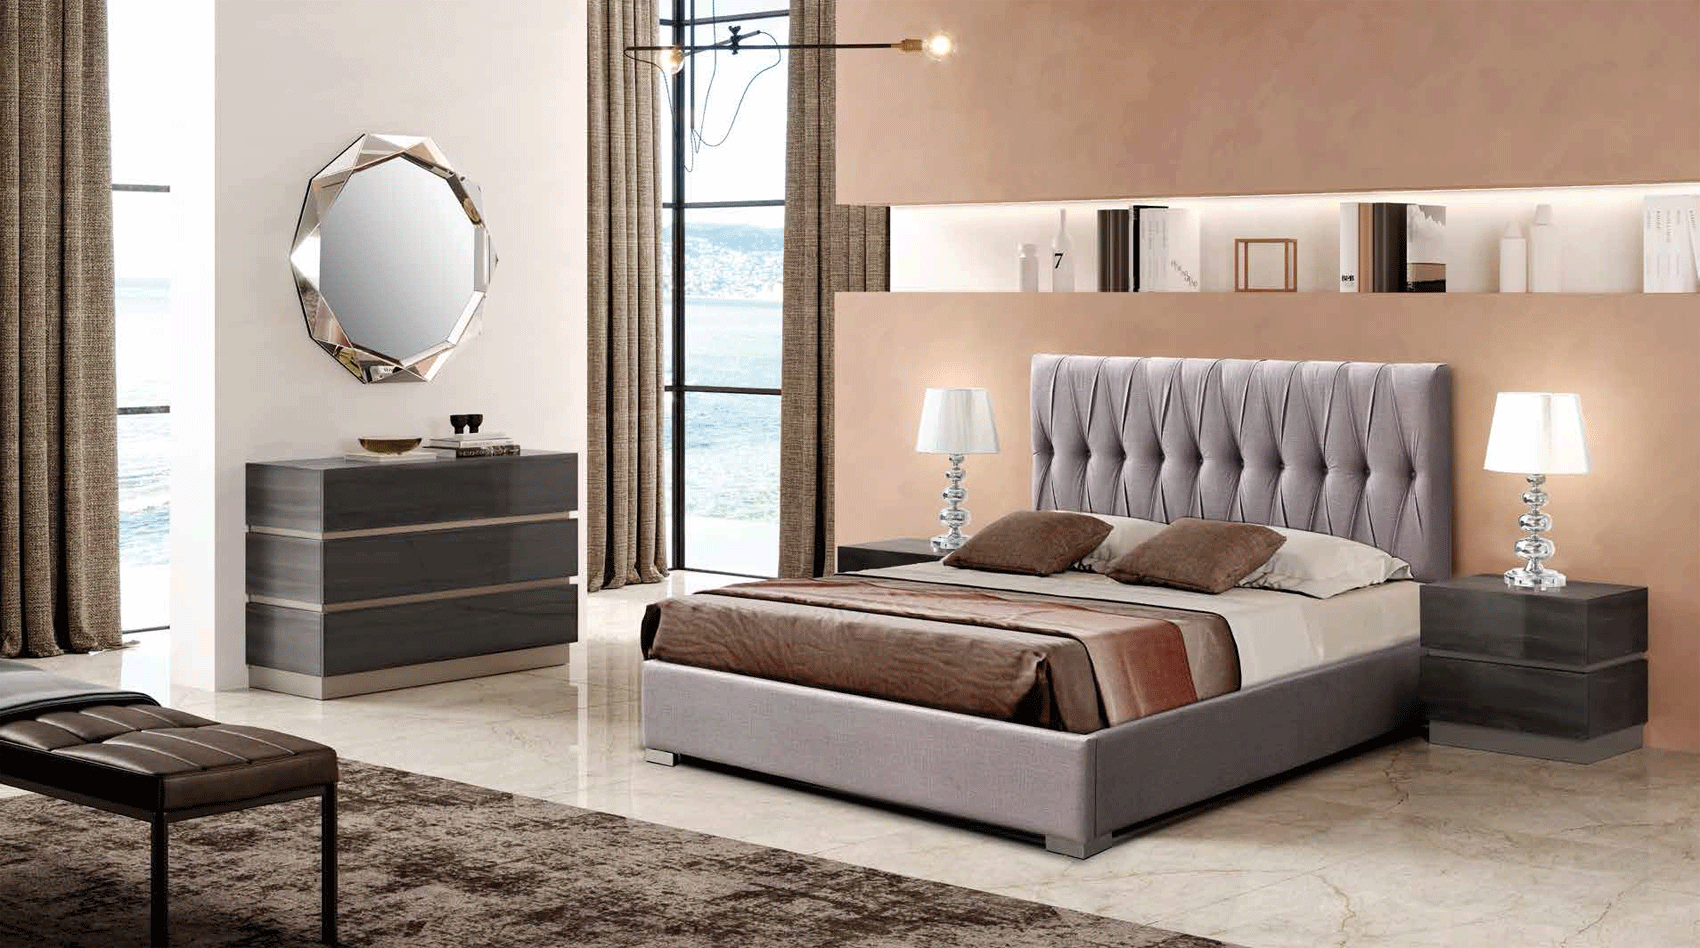 Bedroom Furniture Beds 401 Mulan, M-151, C-151, E-413, YP440-N